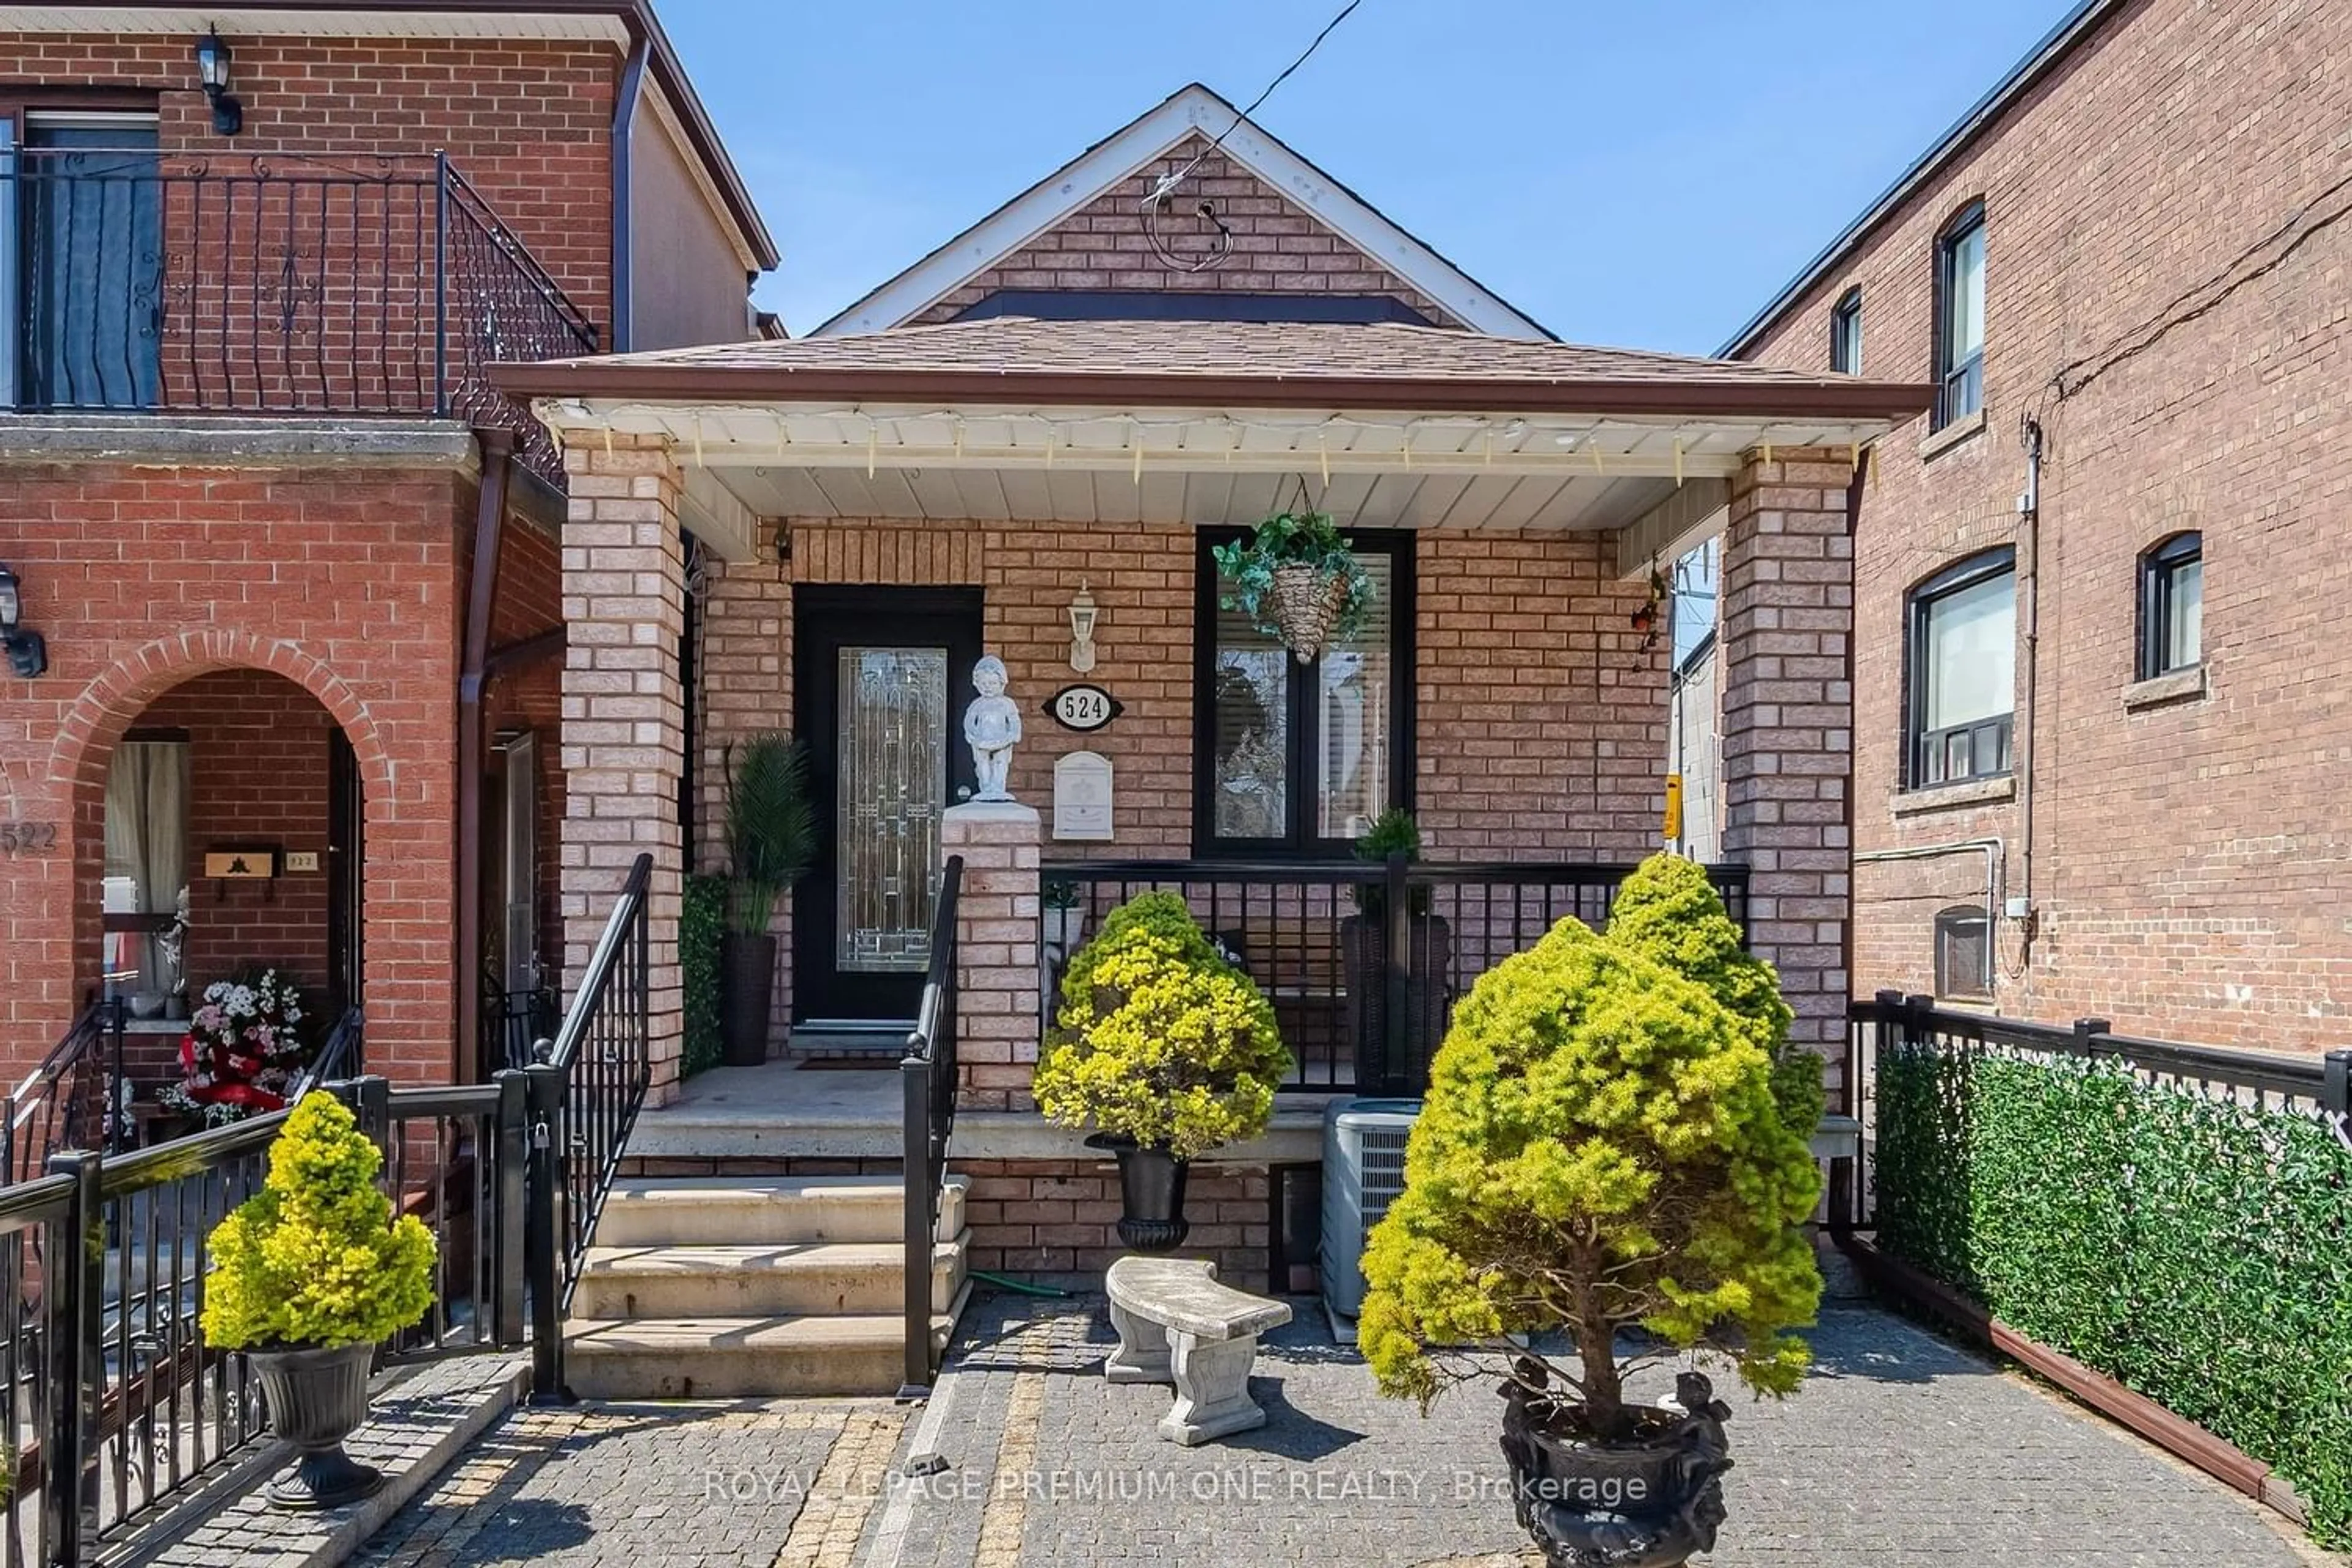 Home with brick exterior material for 524 Salem Ave, Toronto Ontario M6H 3E1